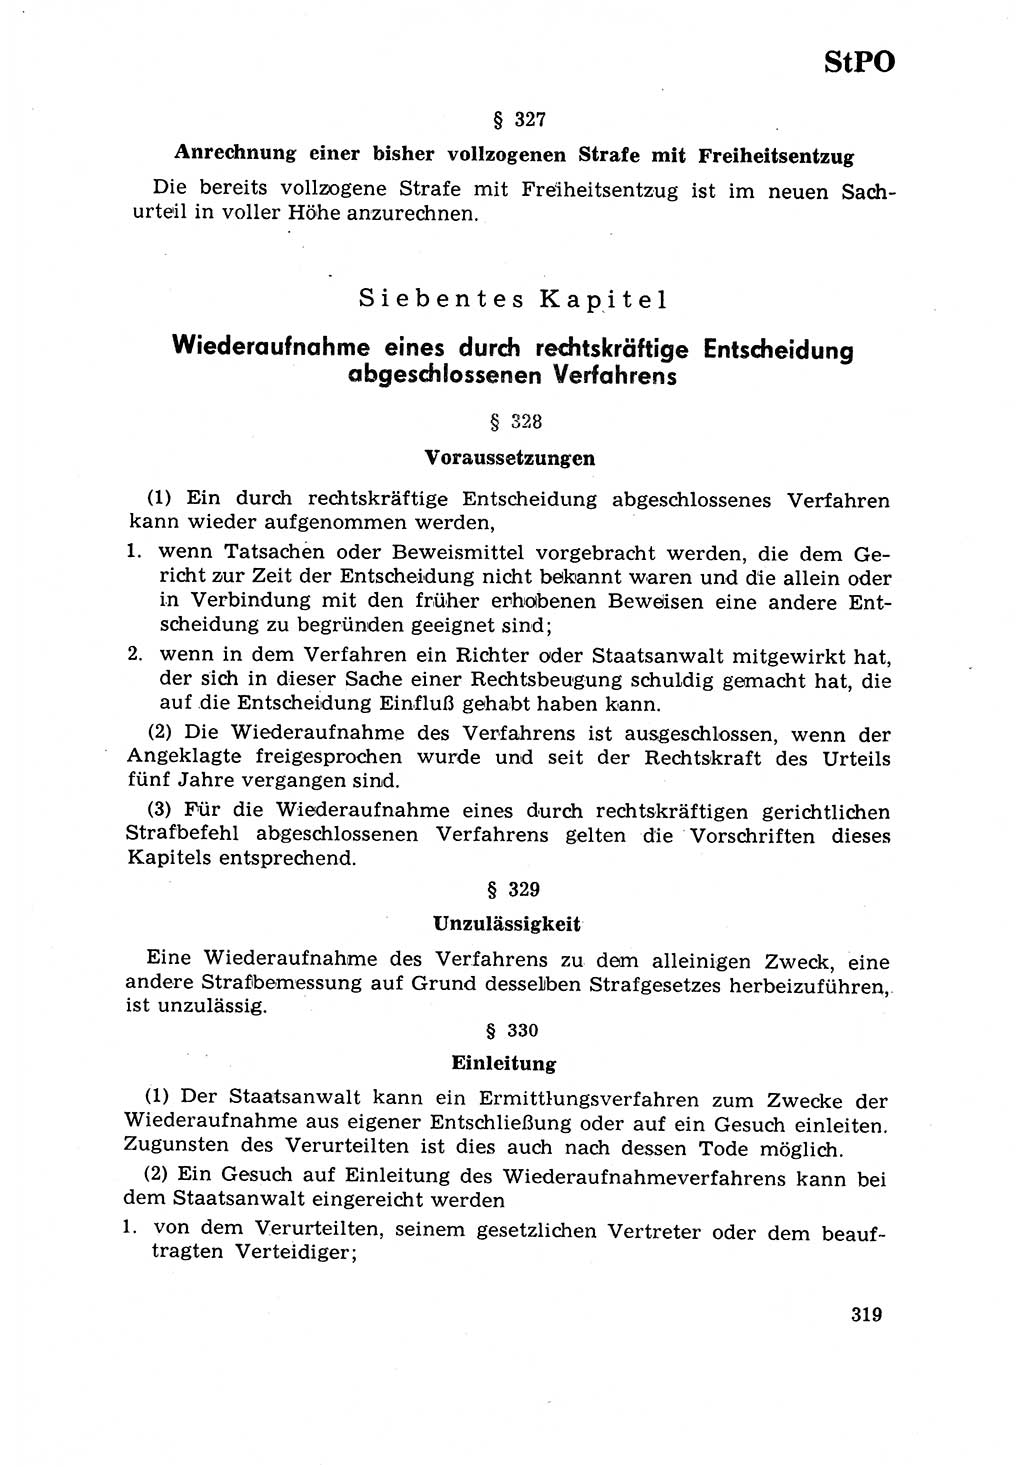 Strafrecht [Deutsche Demokratische Republik (DDR)] 1968, Seite 319 (Strafr. DDR 1968, S. 319)